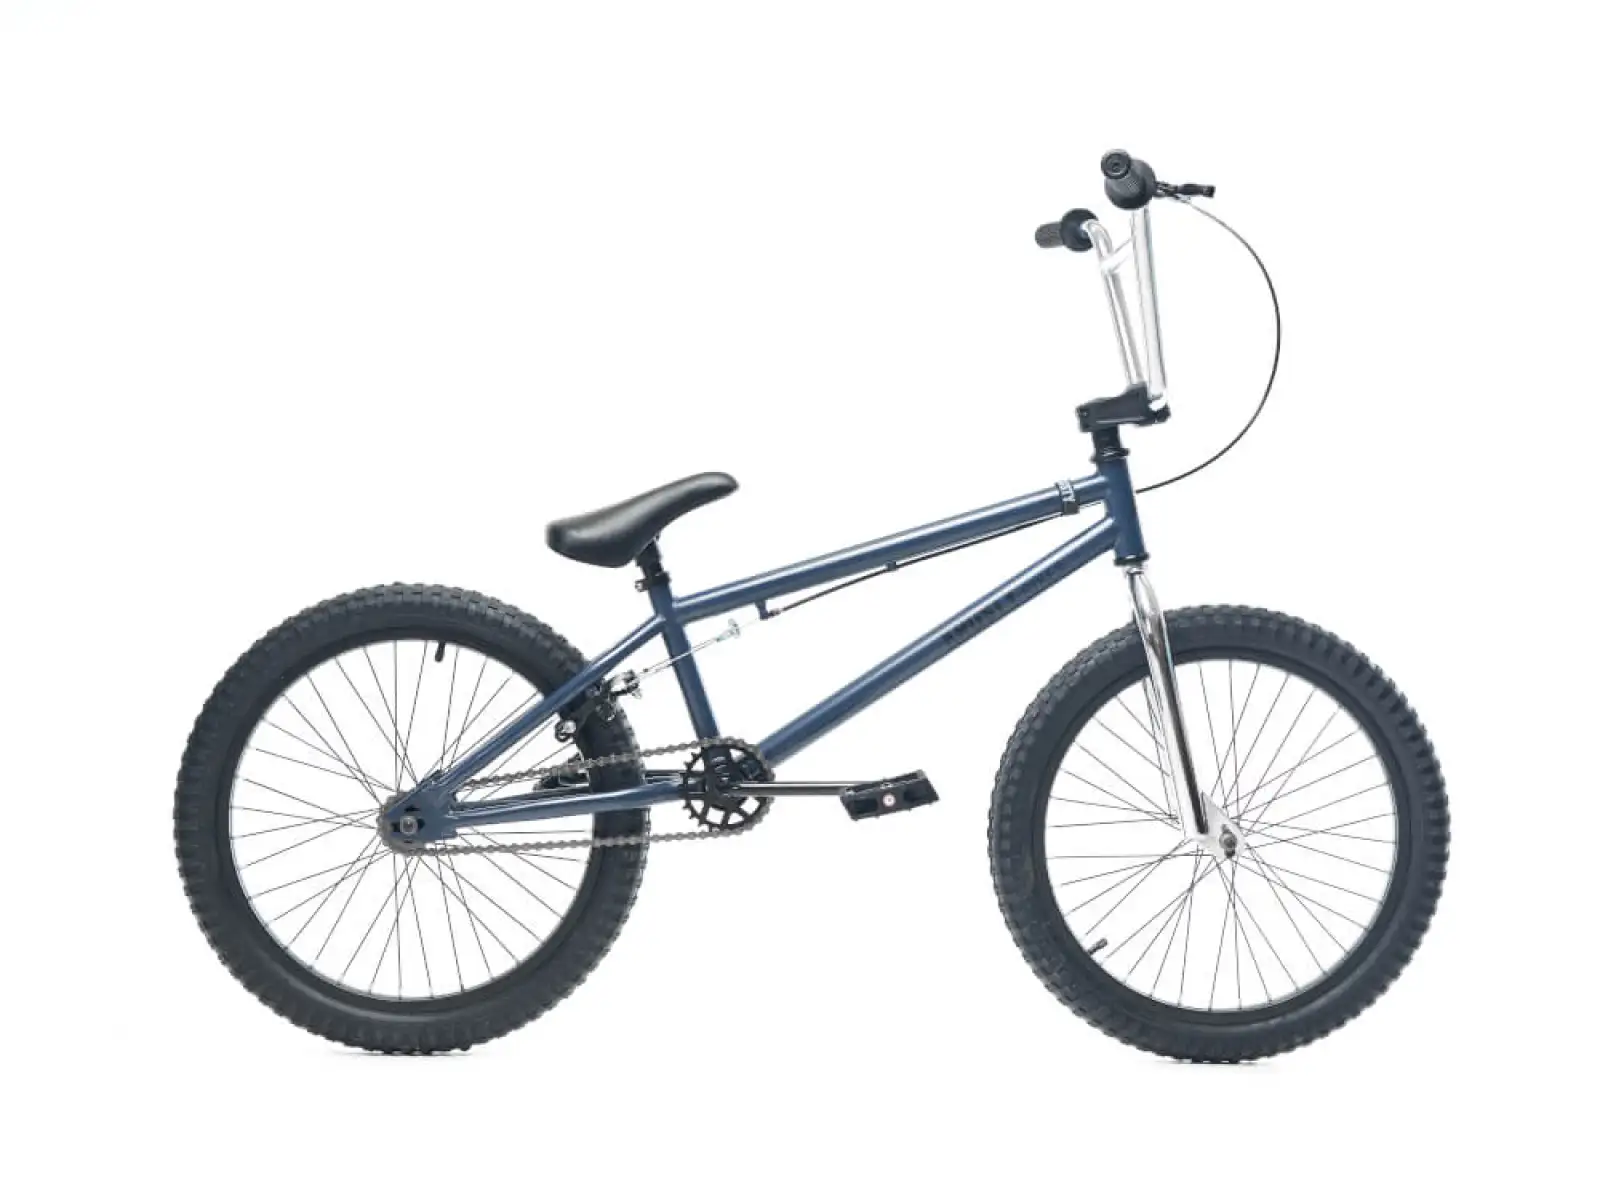 Krusty Bikes 33.0 Limited šedo-modré BMX kolo